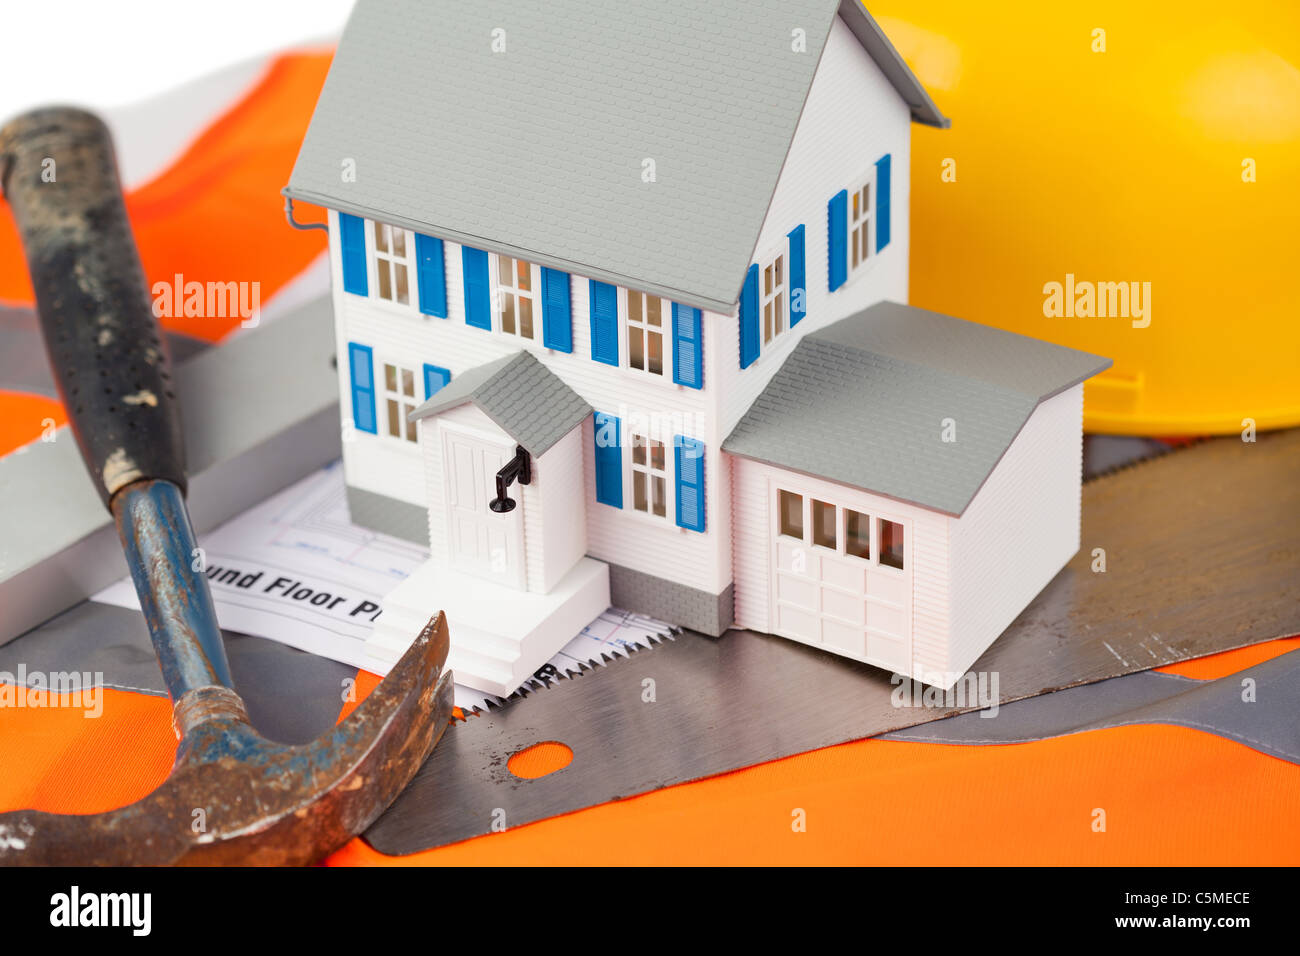 Tools and miniature house sur une veste orange Banque D'Images